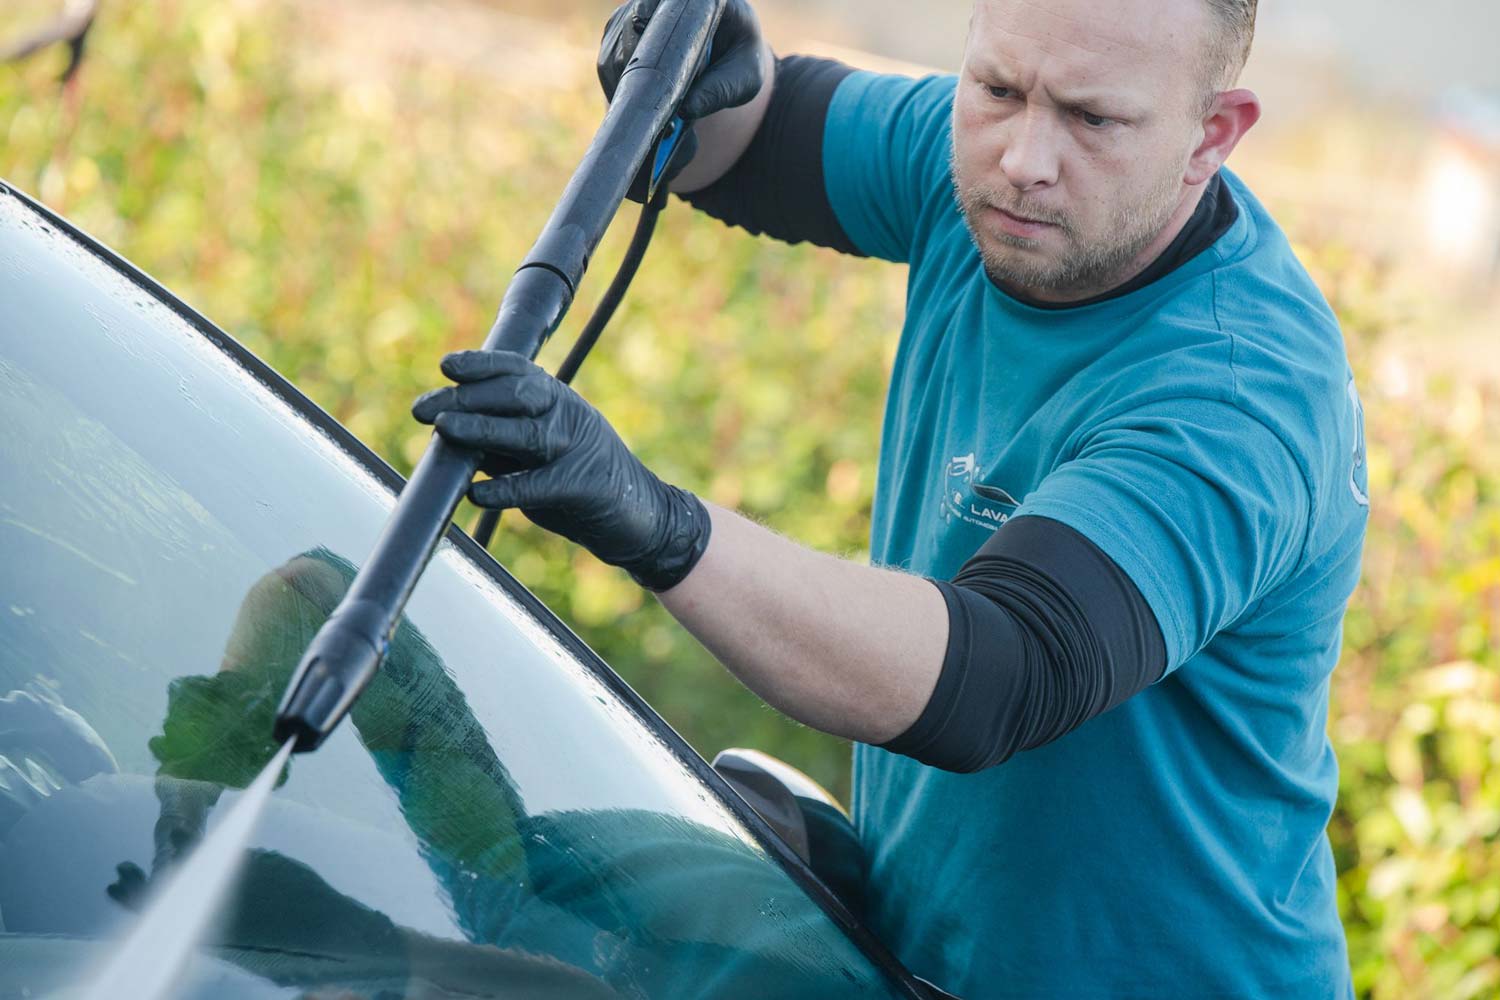 Lire la suite à propos de l’article Kellavages, votre spécialiste du nettoyage de voitures ! 